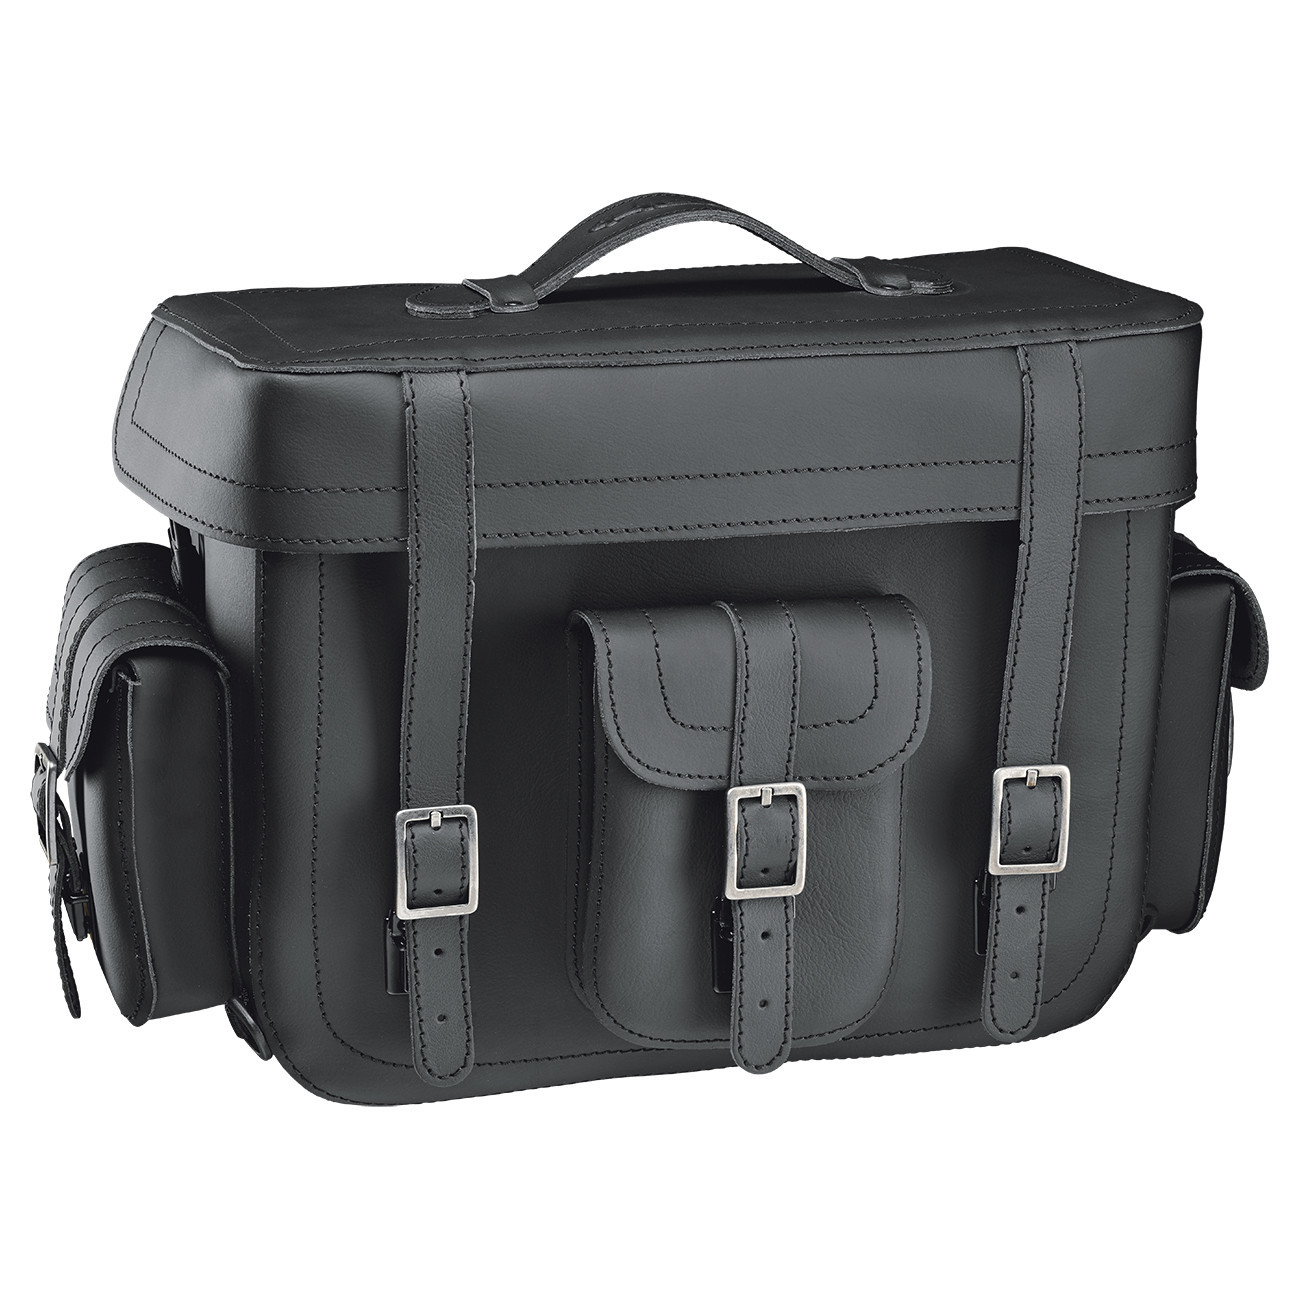 MC tasker - Køb sidetasker, tanktasker, og rejseudstyr her